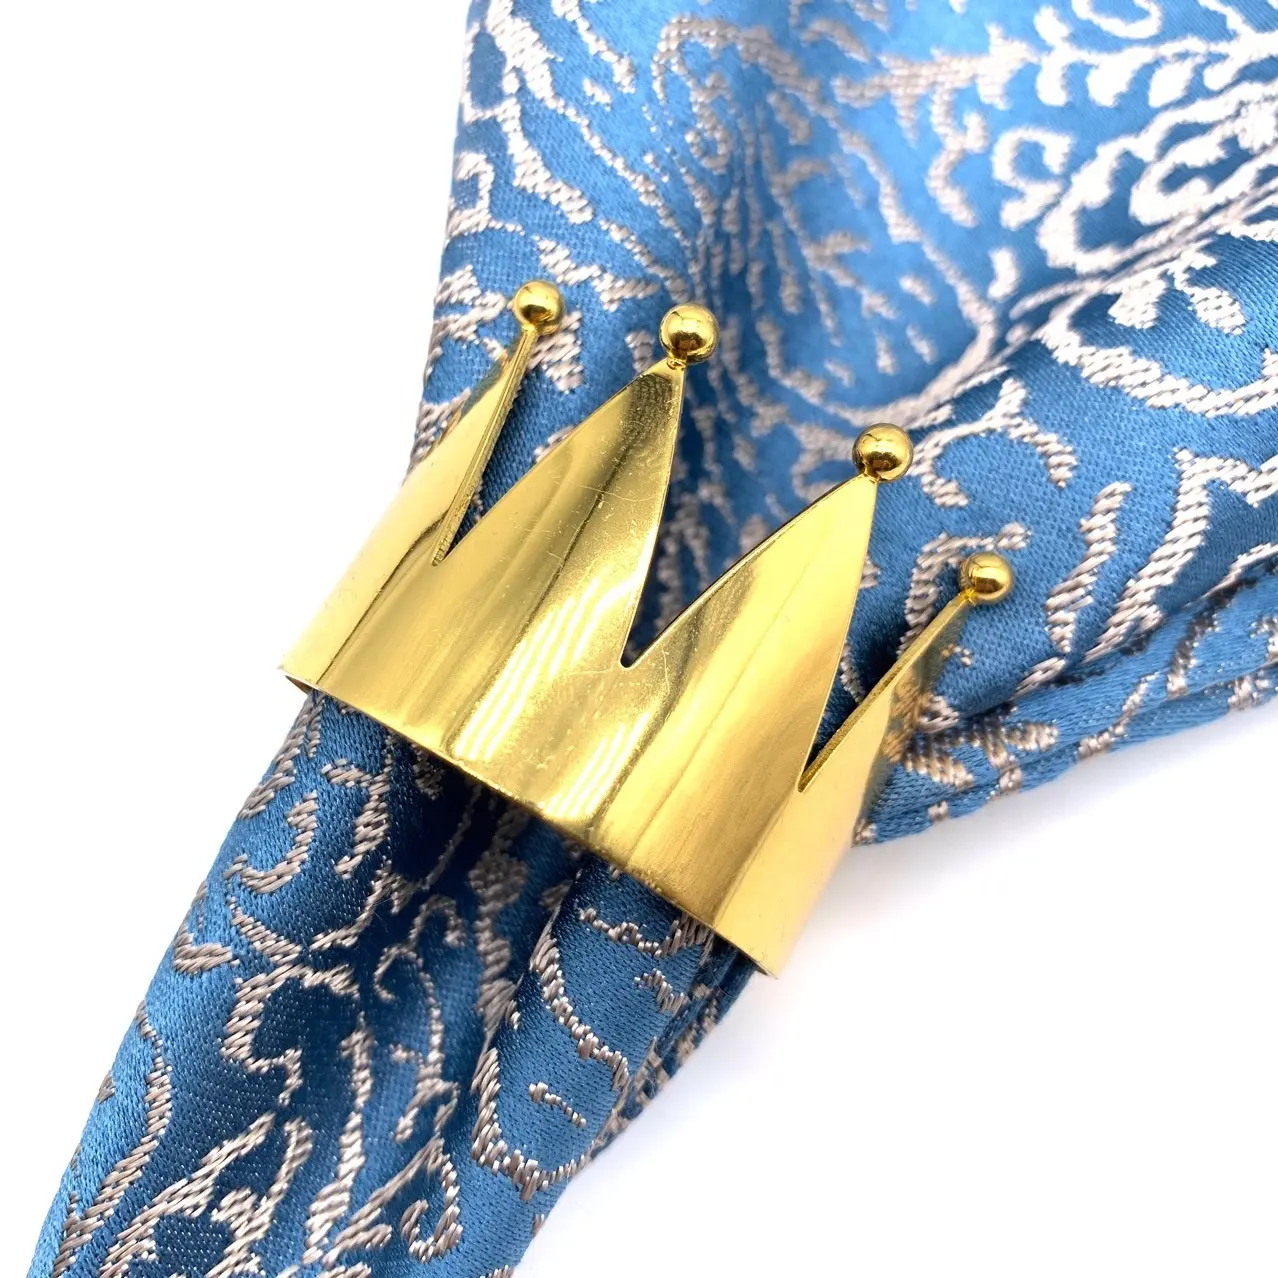 Anneaux de serviette en forme de couronne d'or, jolie Table de dîner et décoration de mariage, anneaux porte-serviette de luxe